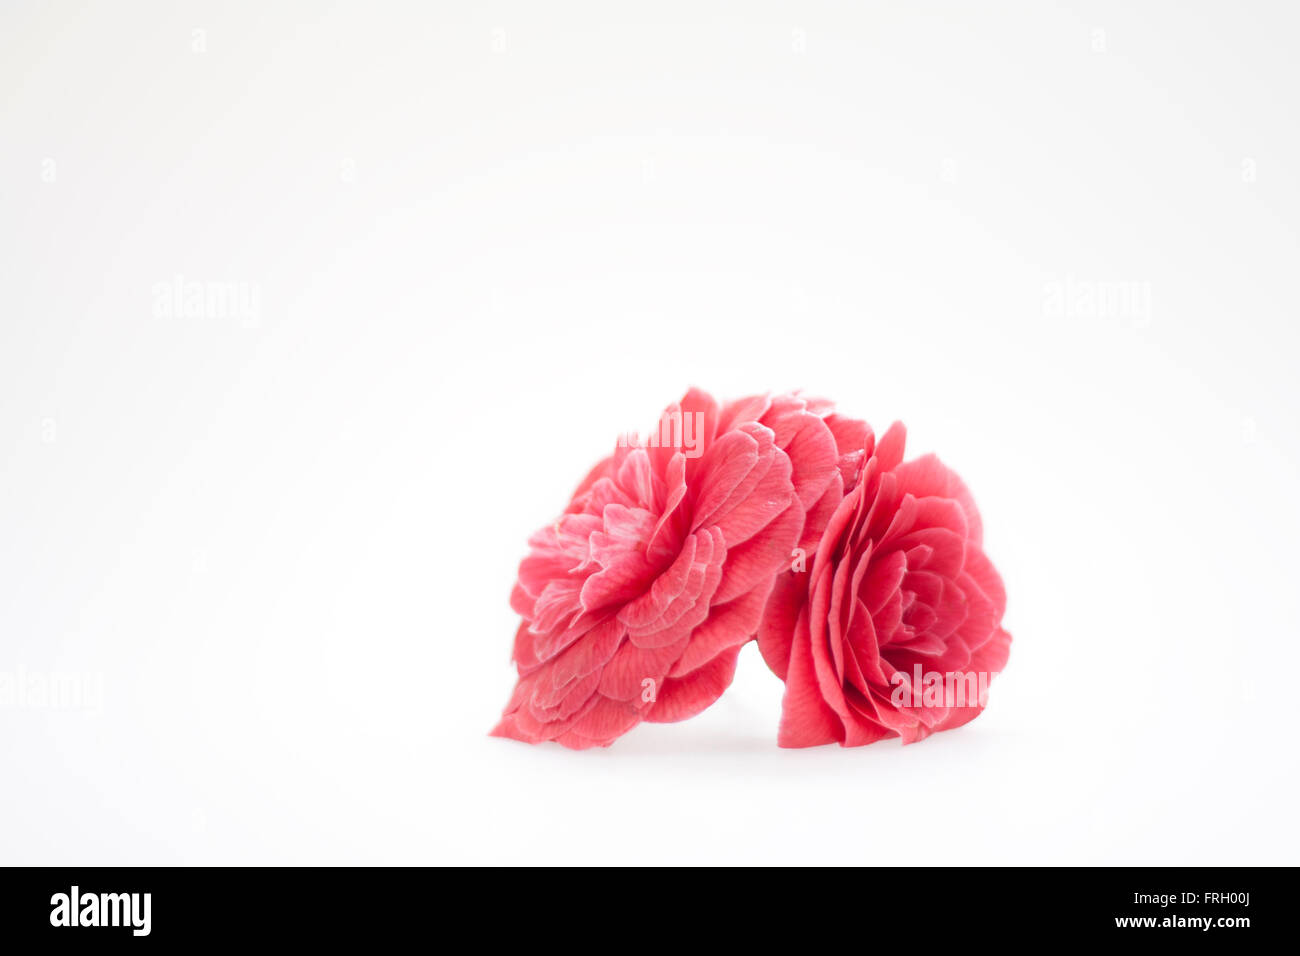 Una simple flor de camelia rosa sobre un fondo blanco. Foto de stock